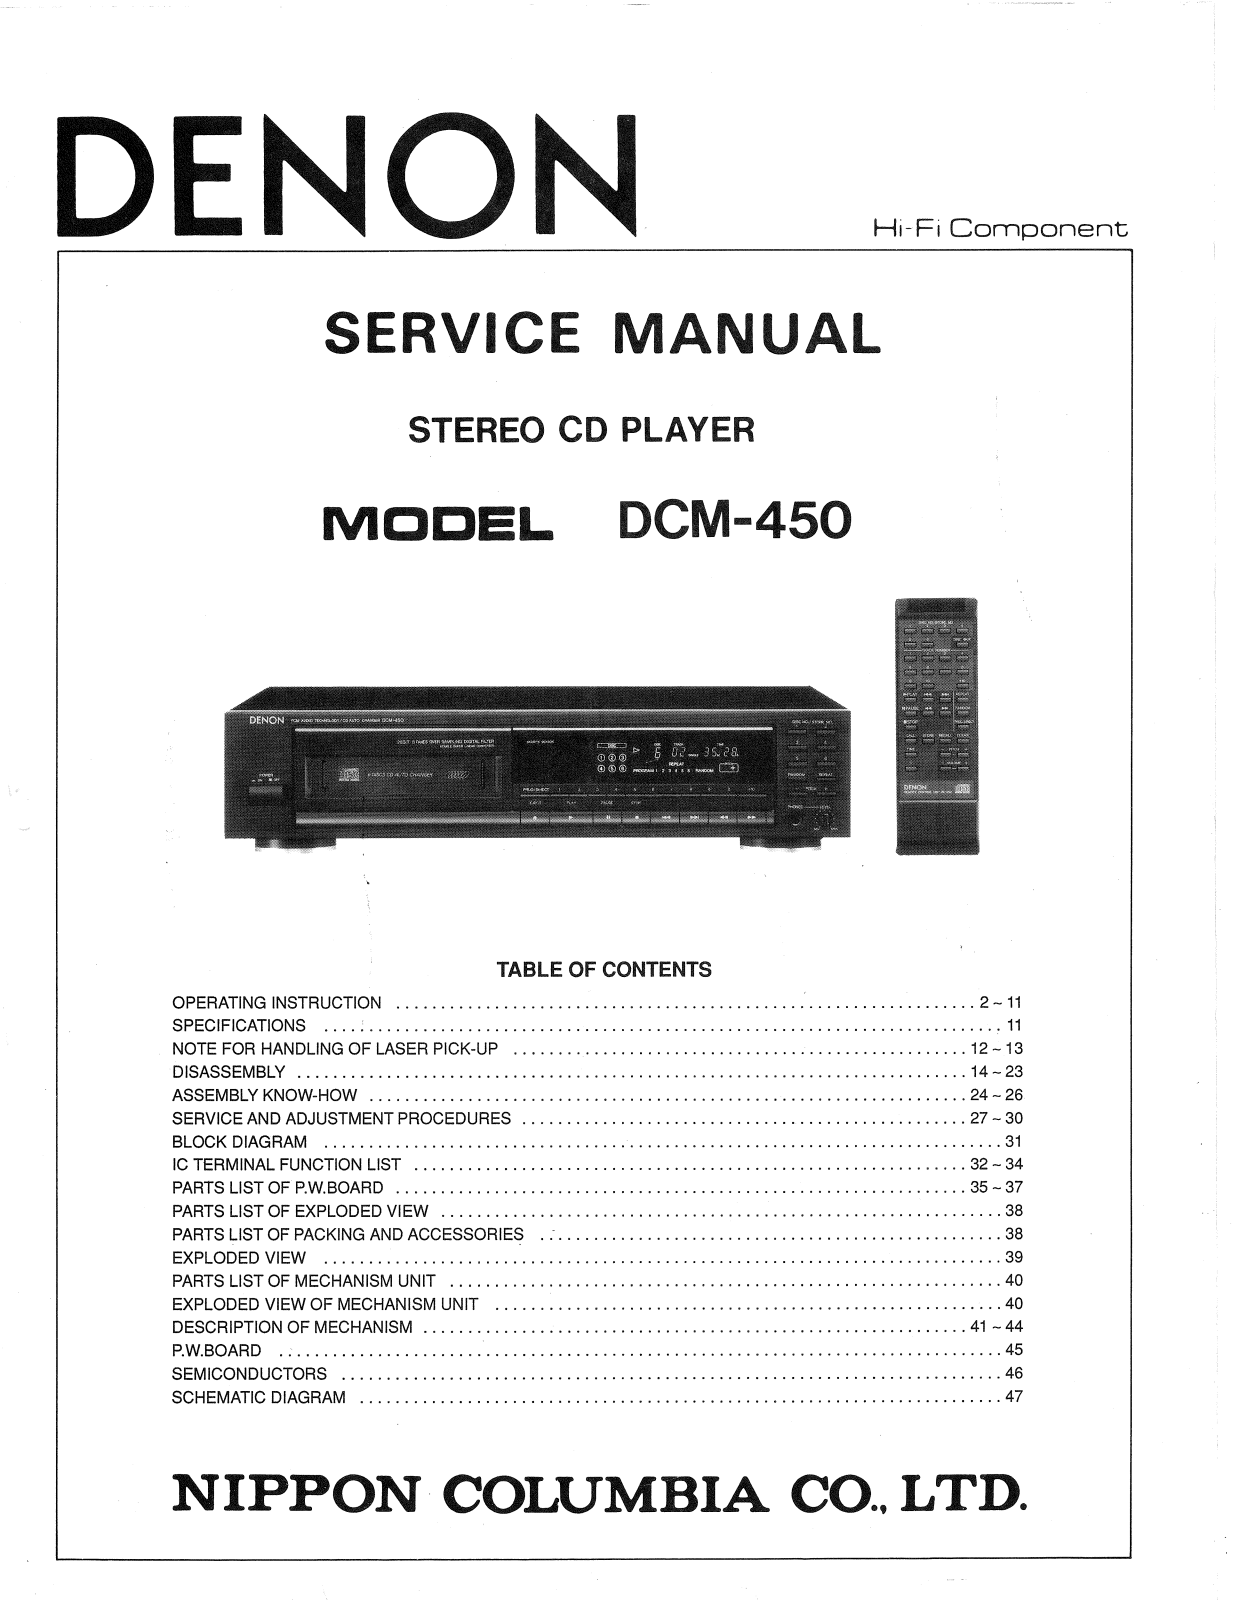 Denon DCM-450 Service Manual